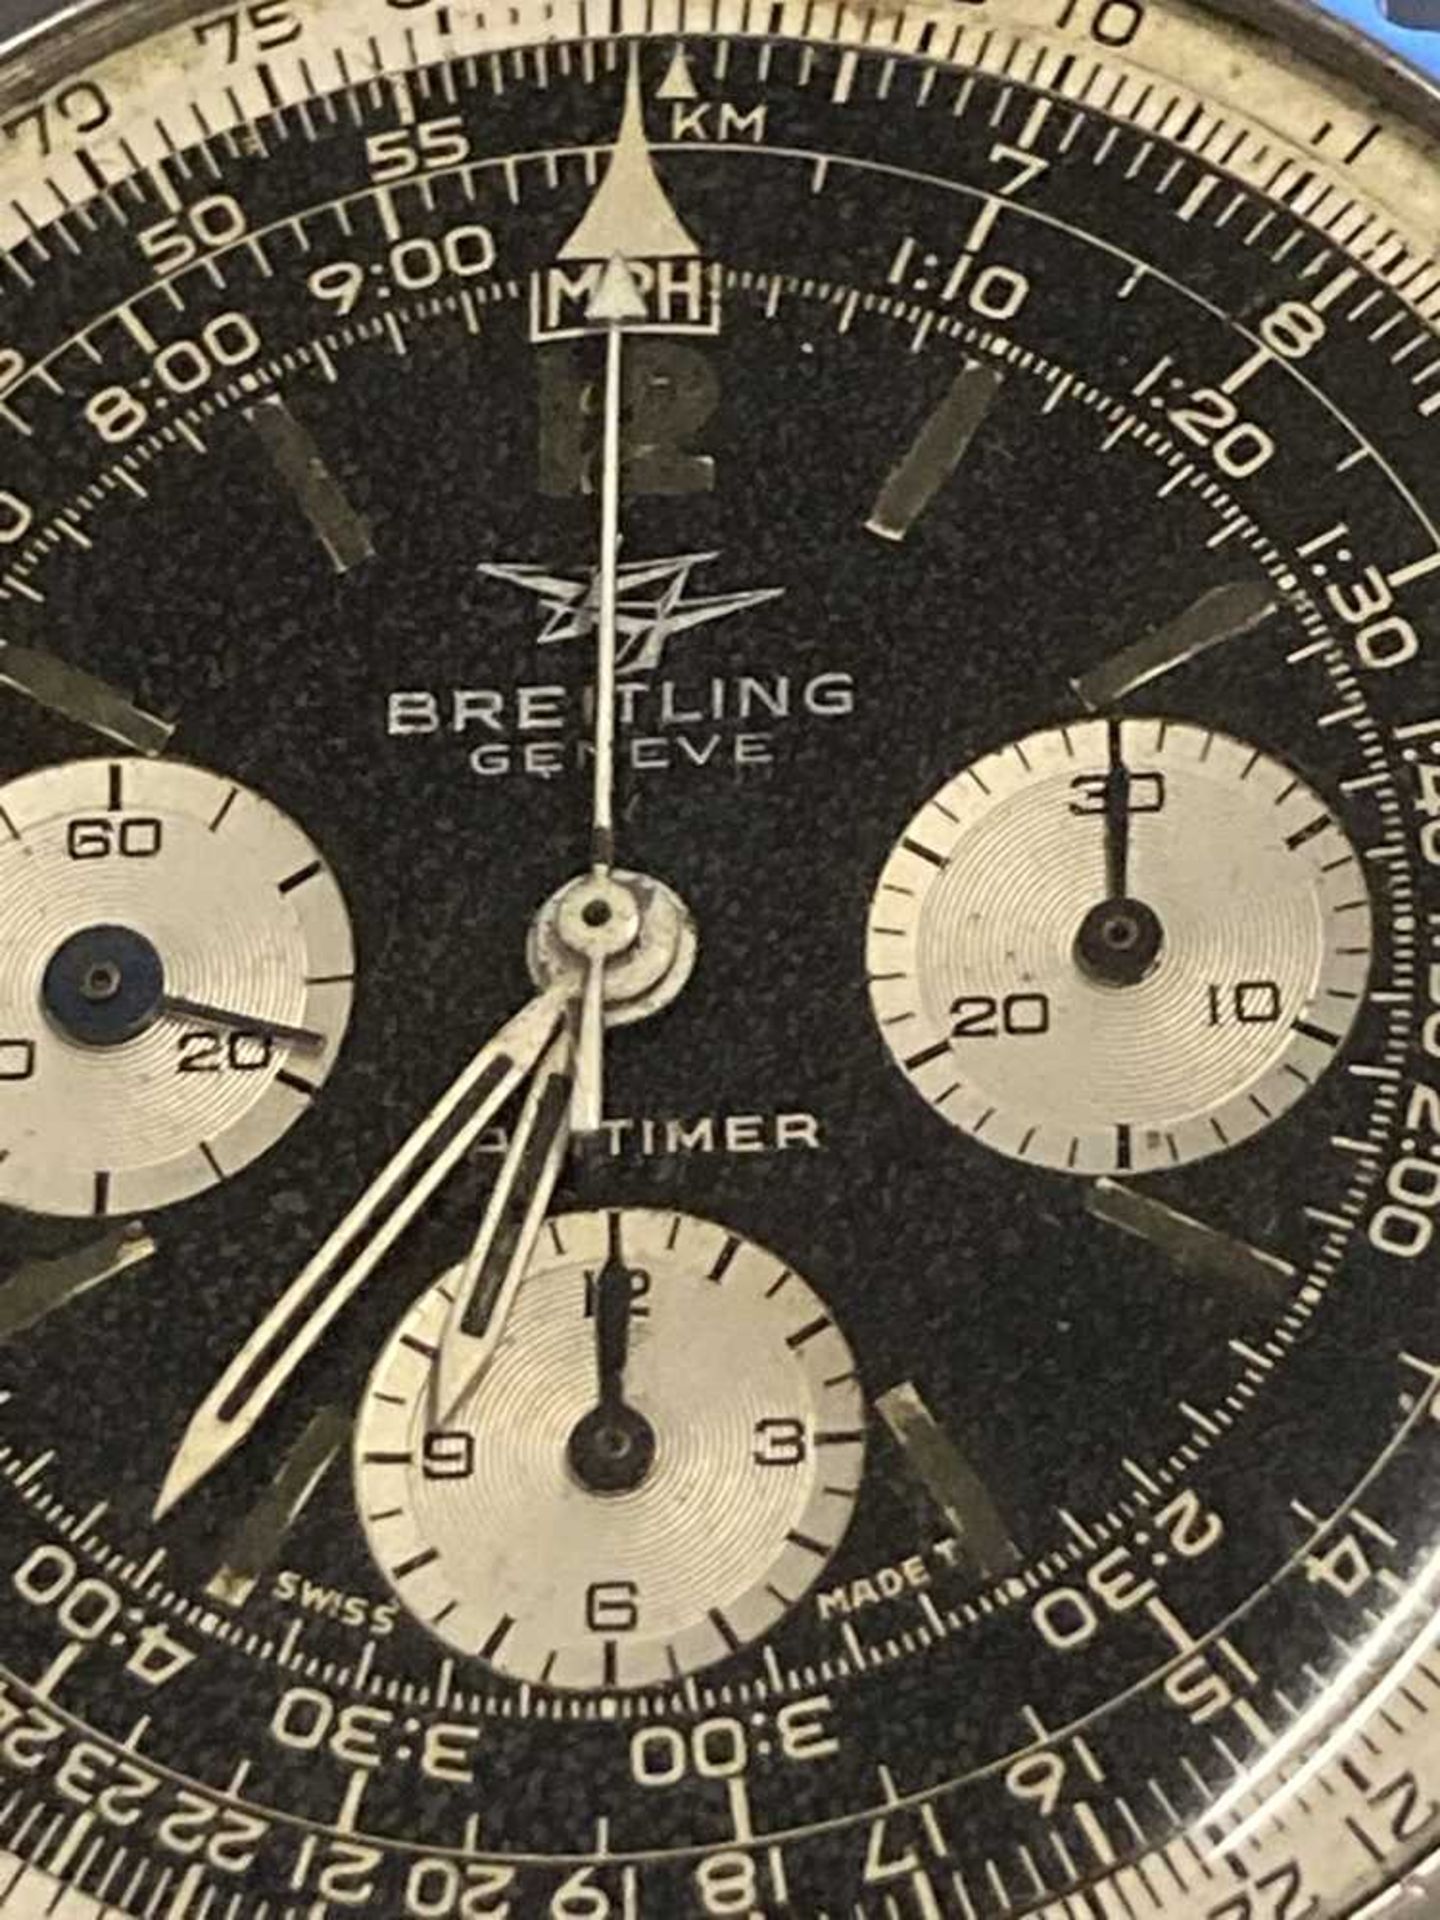 Breitling: a gentleman's steel watch - Image 11 of 11